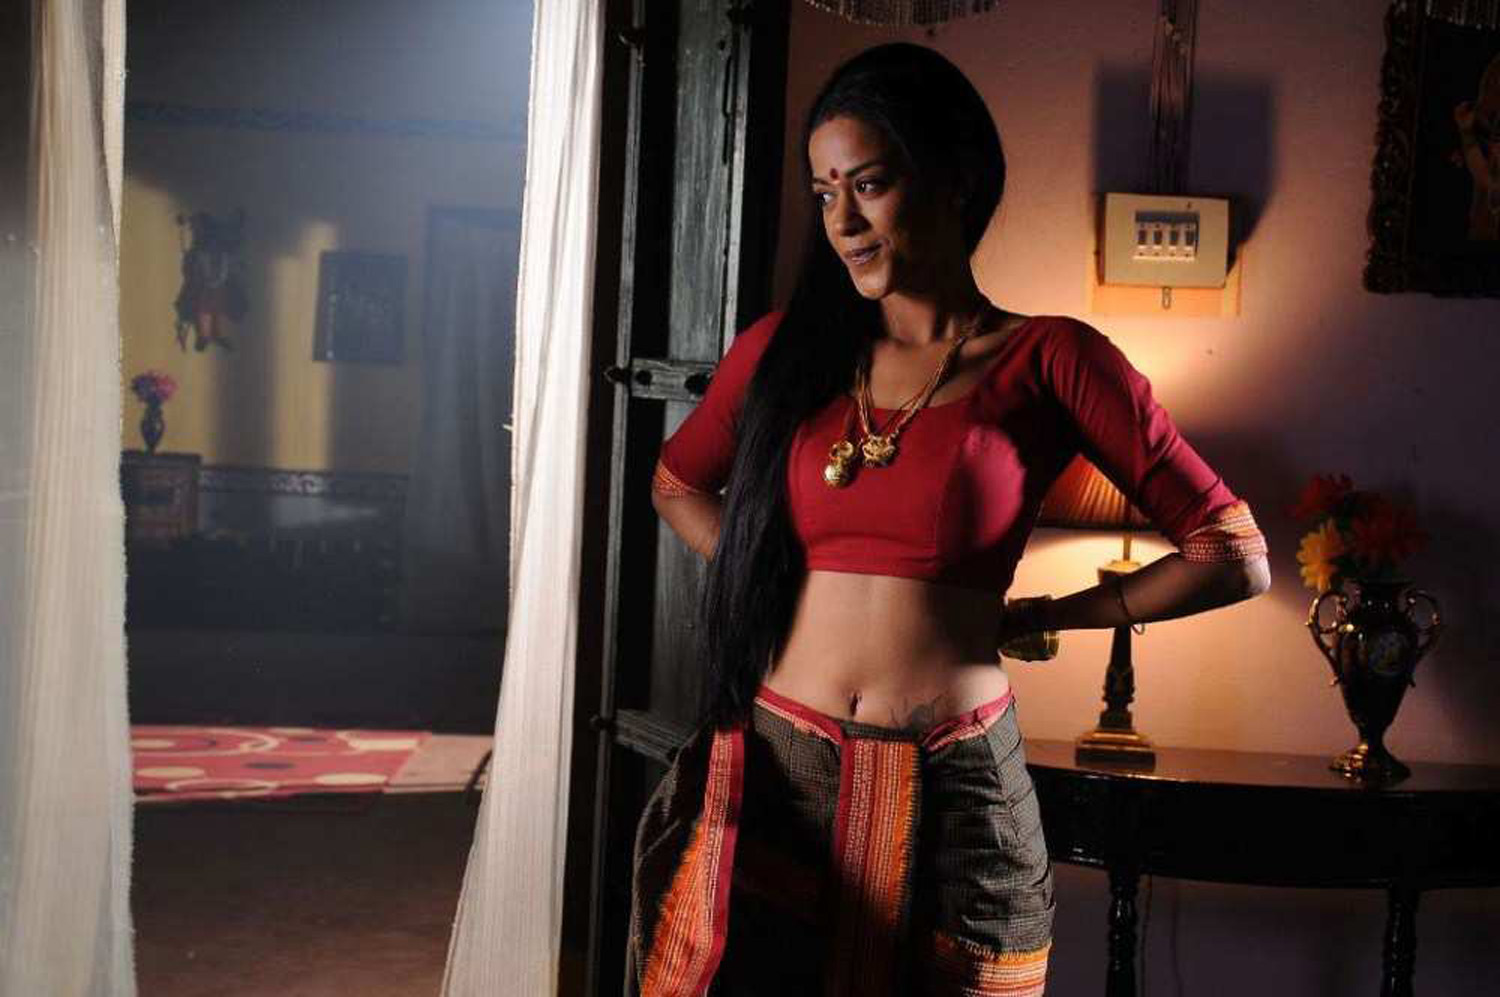 Actress Gallery 4-Tamil-Telugu-Actress Stills-Photos